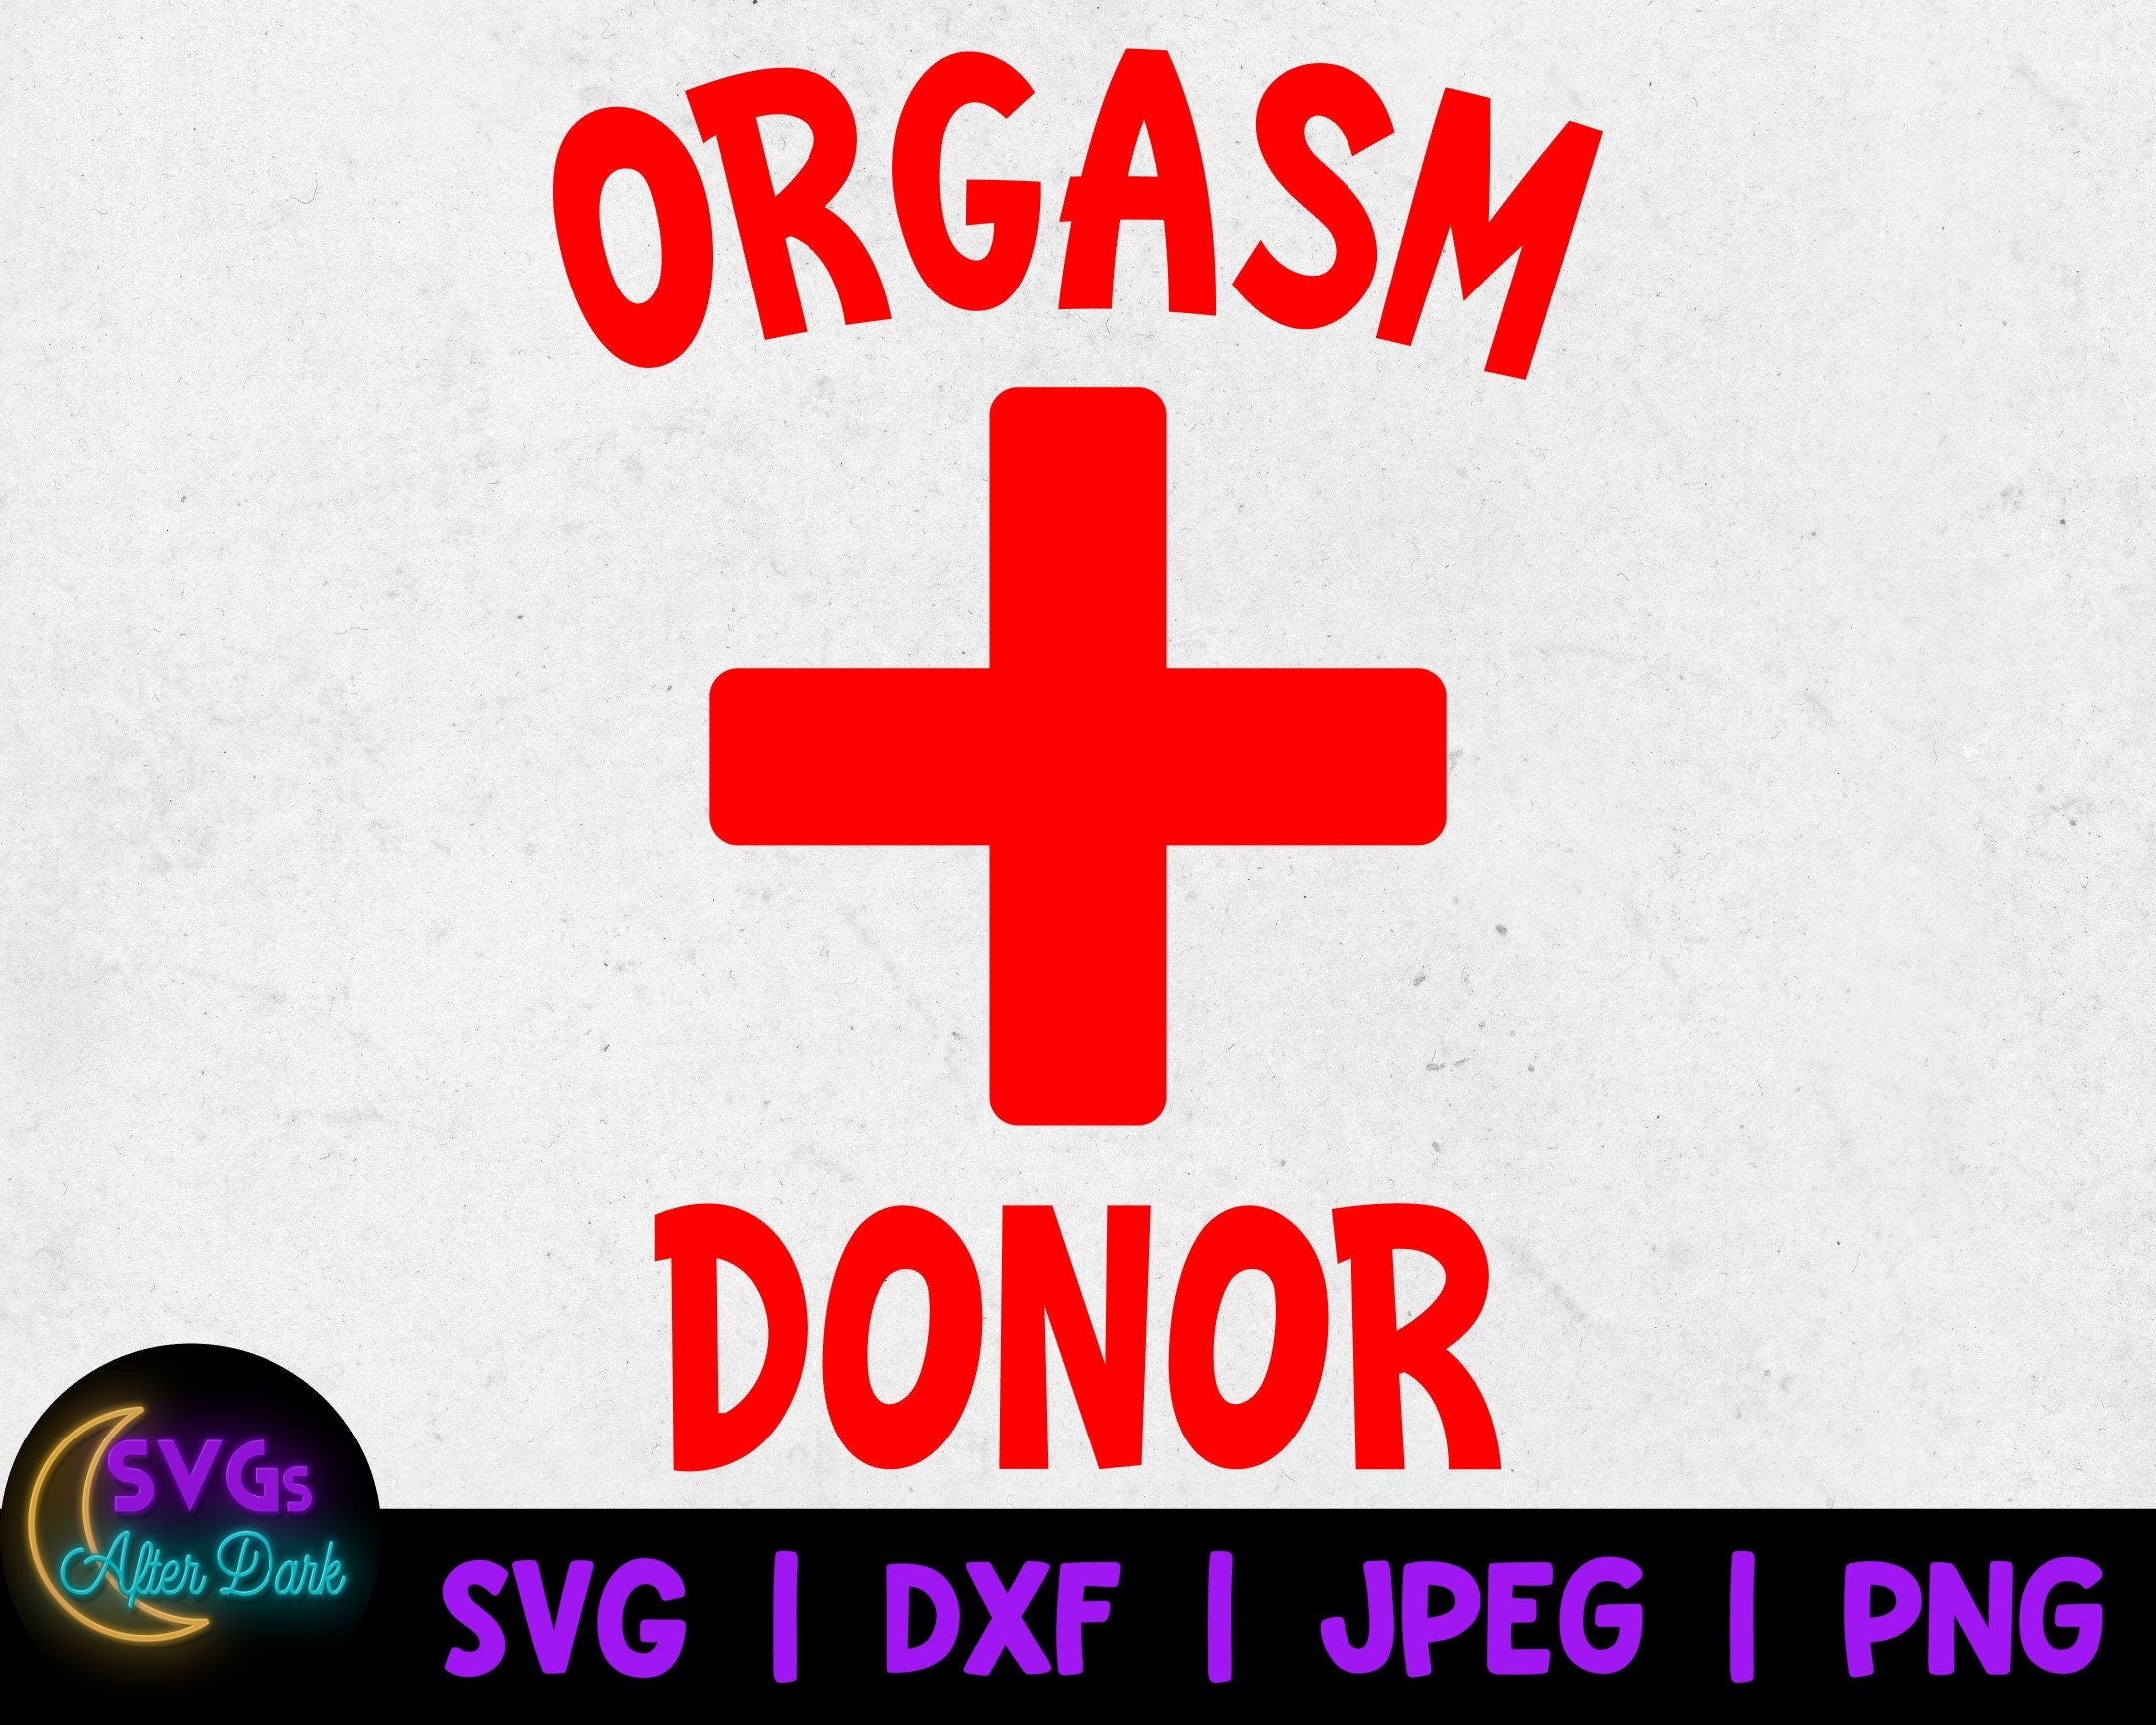 NSFW SVG - Orgasm Donor SVG - Adult Humor Svg - Funny Men's Shirt Svg